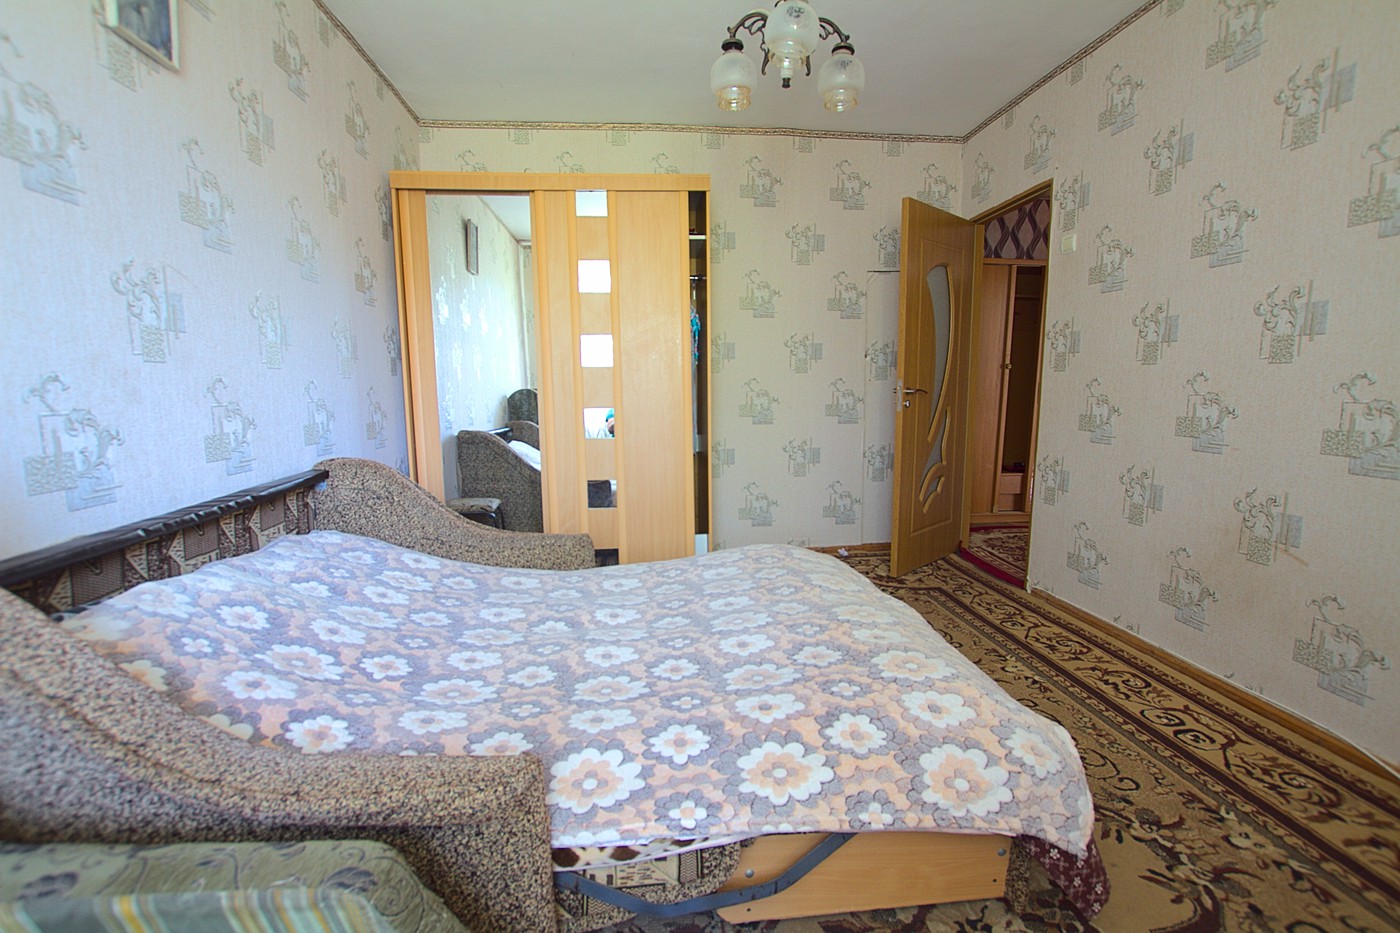 Chisinau, Riscani. Günstige Miete in der Nähe von McDonald: 2 Zimmer, 1 Schlafzimmer, 48 m²